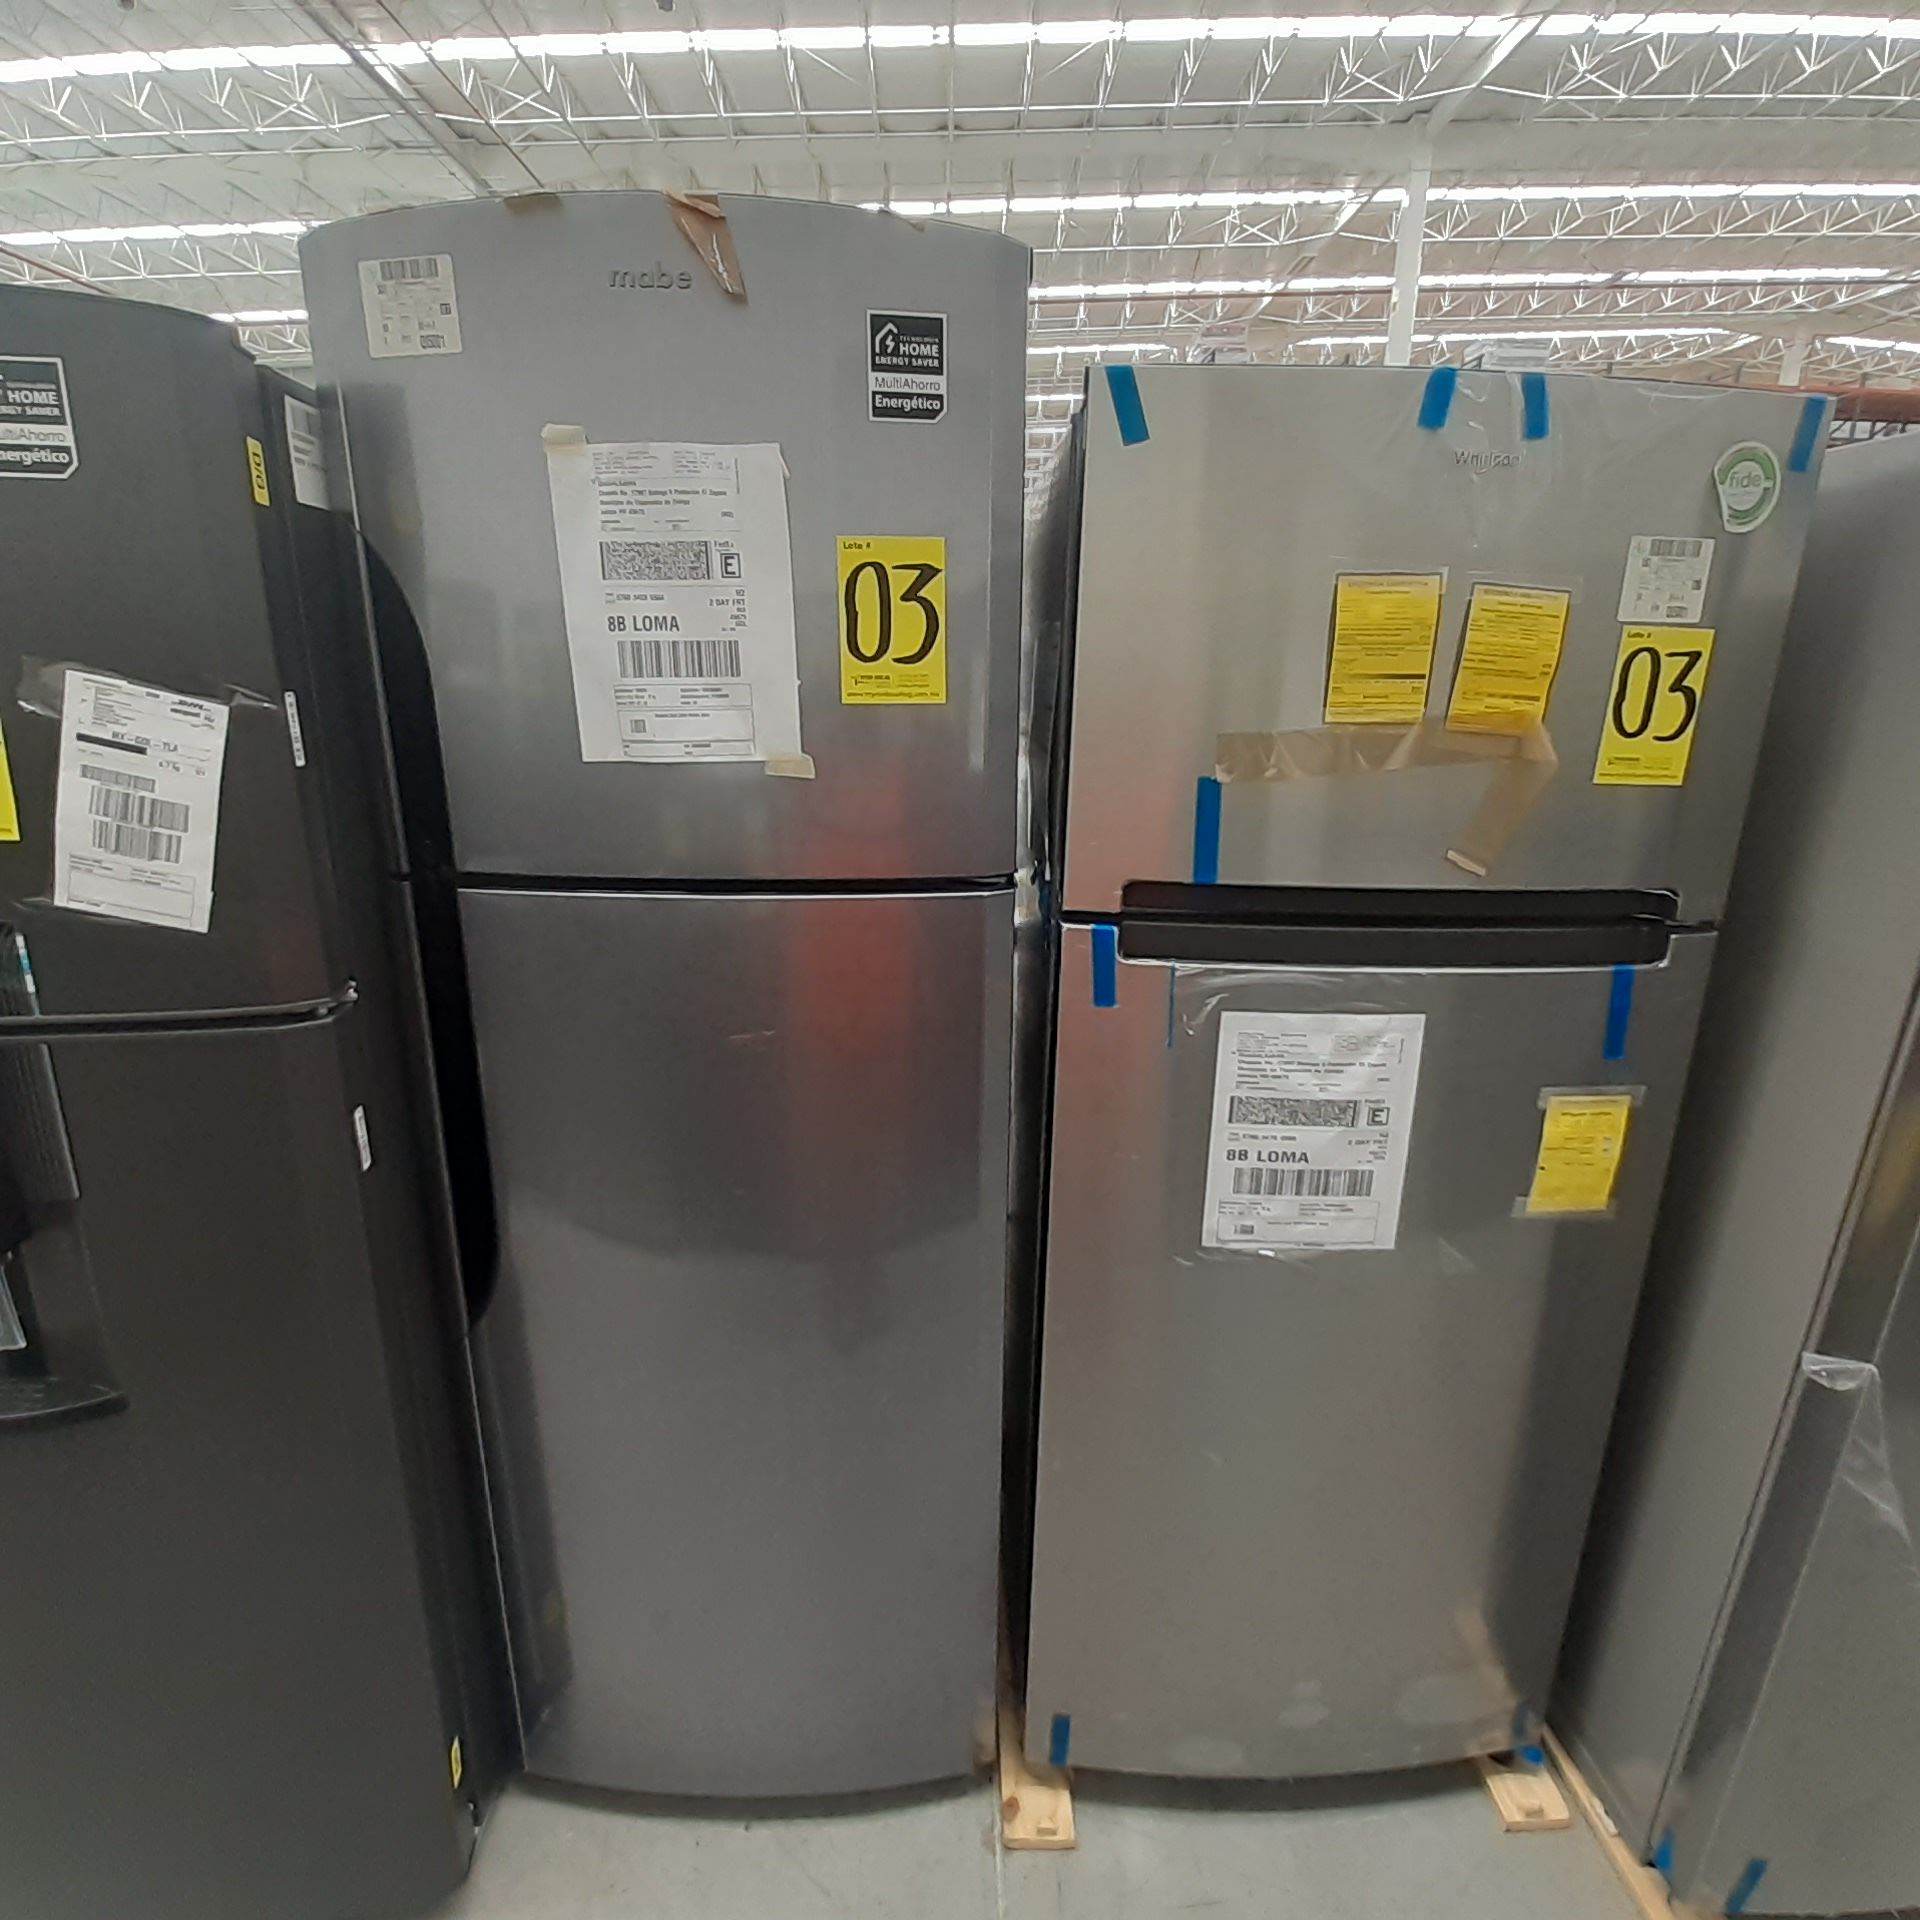 Lote De 2 Refrigeradores: 1 Refrigerador Marca Whirlpool, 1 Refrigerador Marca Mabe, Distintos Model